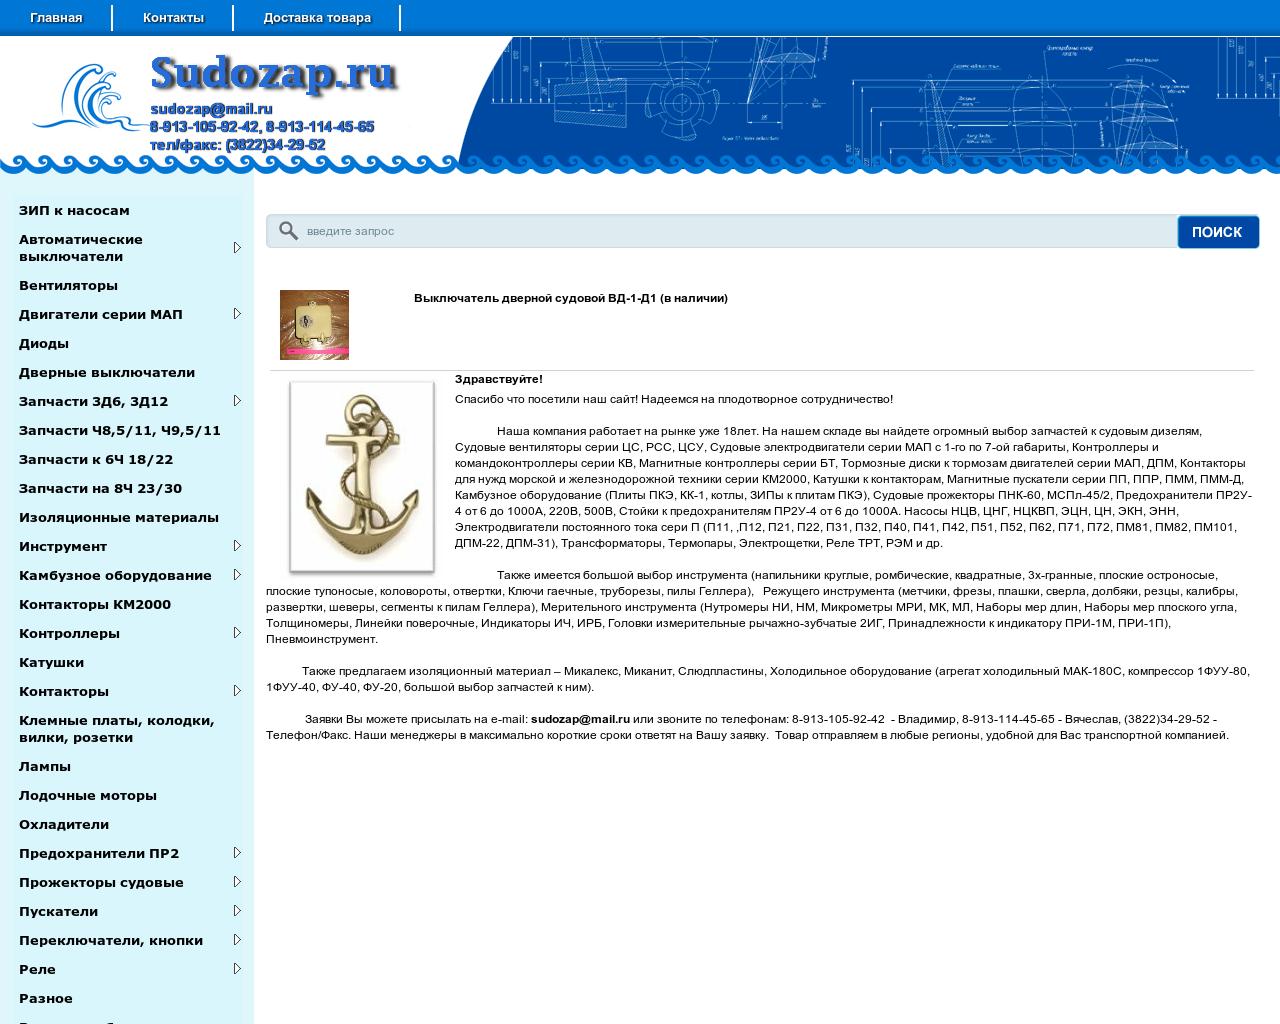 Изображение сайта sudozap.ru в разрешении 1280x1024